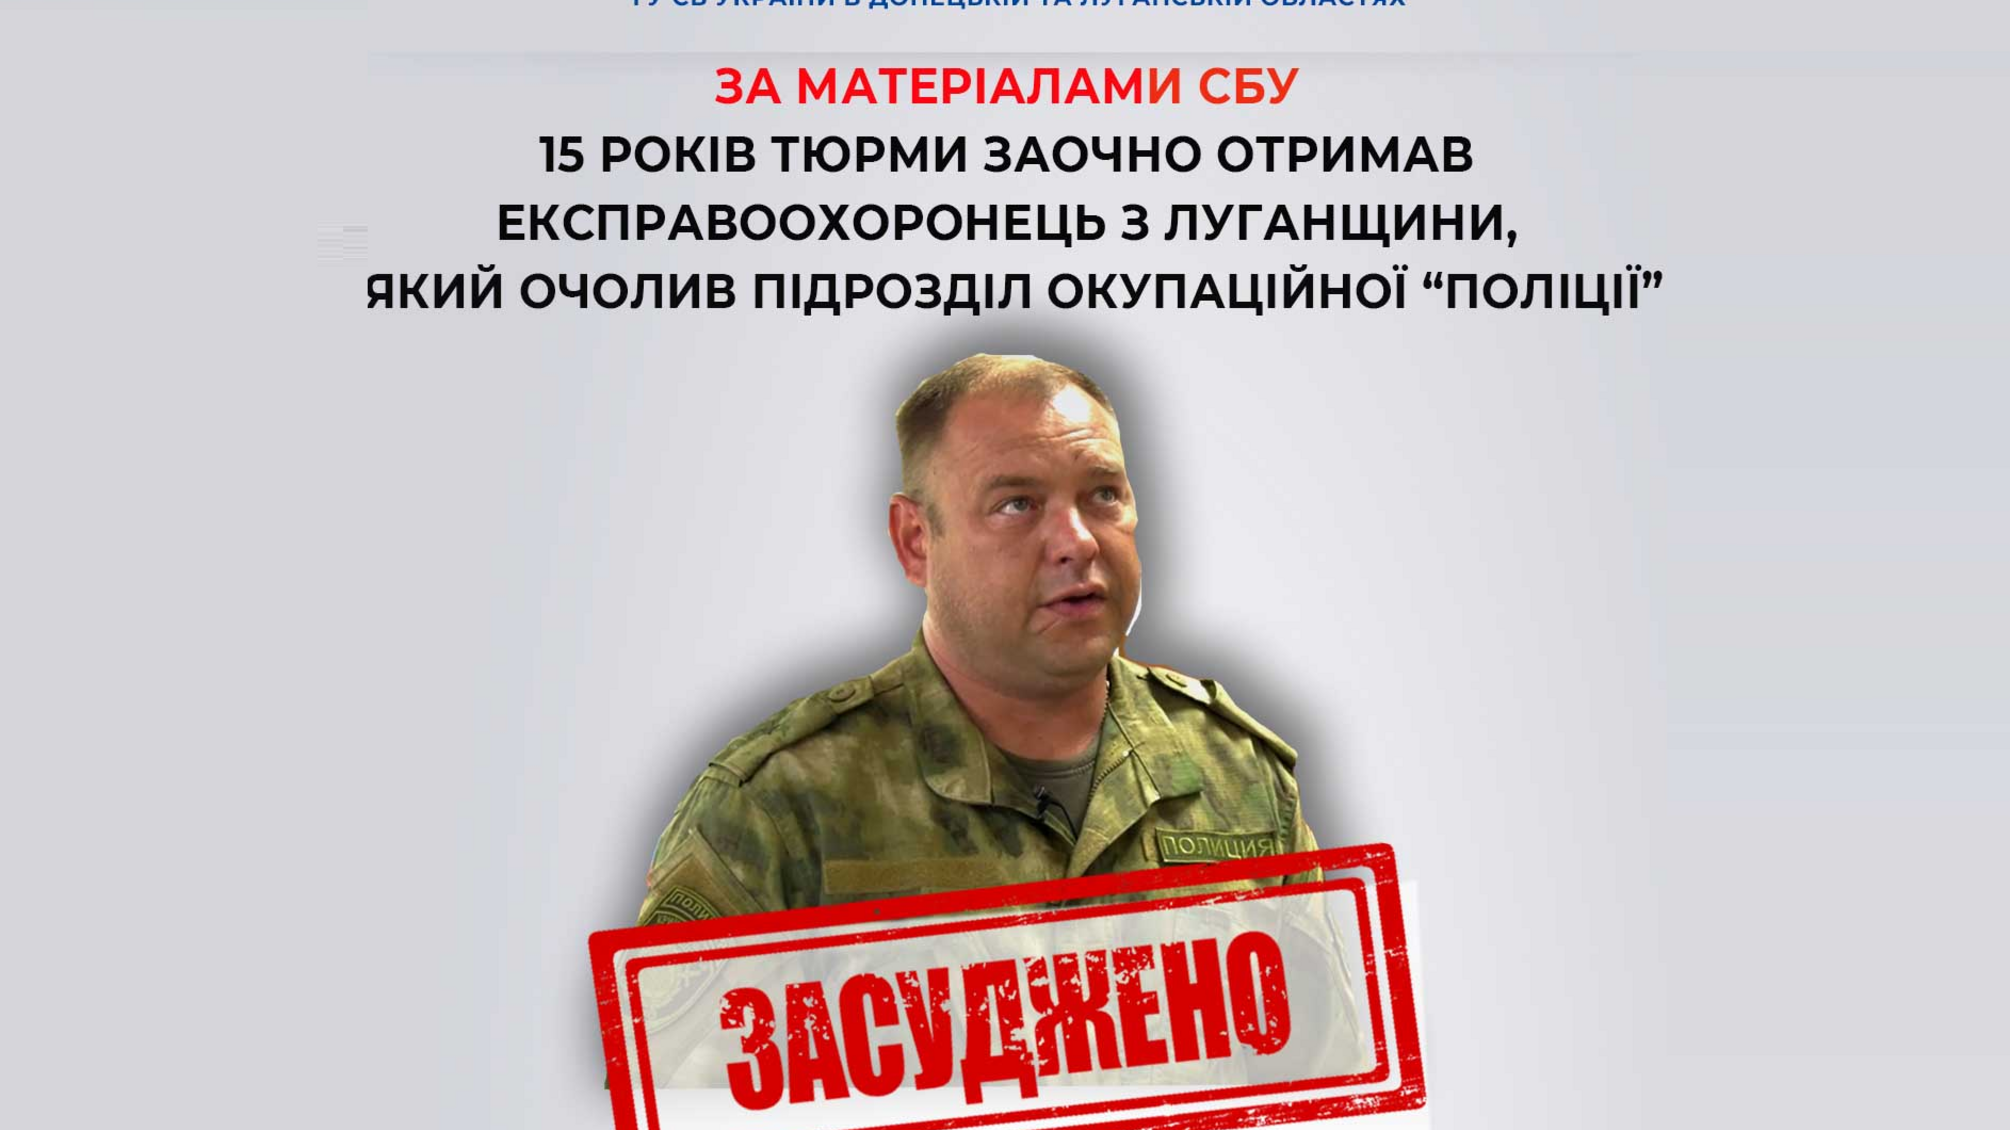 Экс-правохранителя, возглавившего подразделение оккупационной 'полиции' в Луганской области, осудили на 15 лет заочно